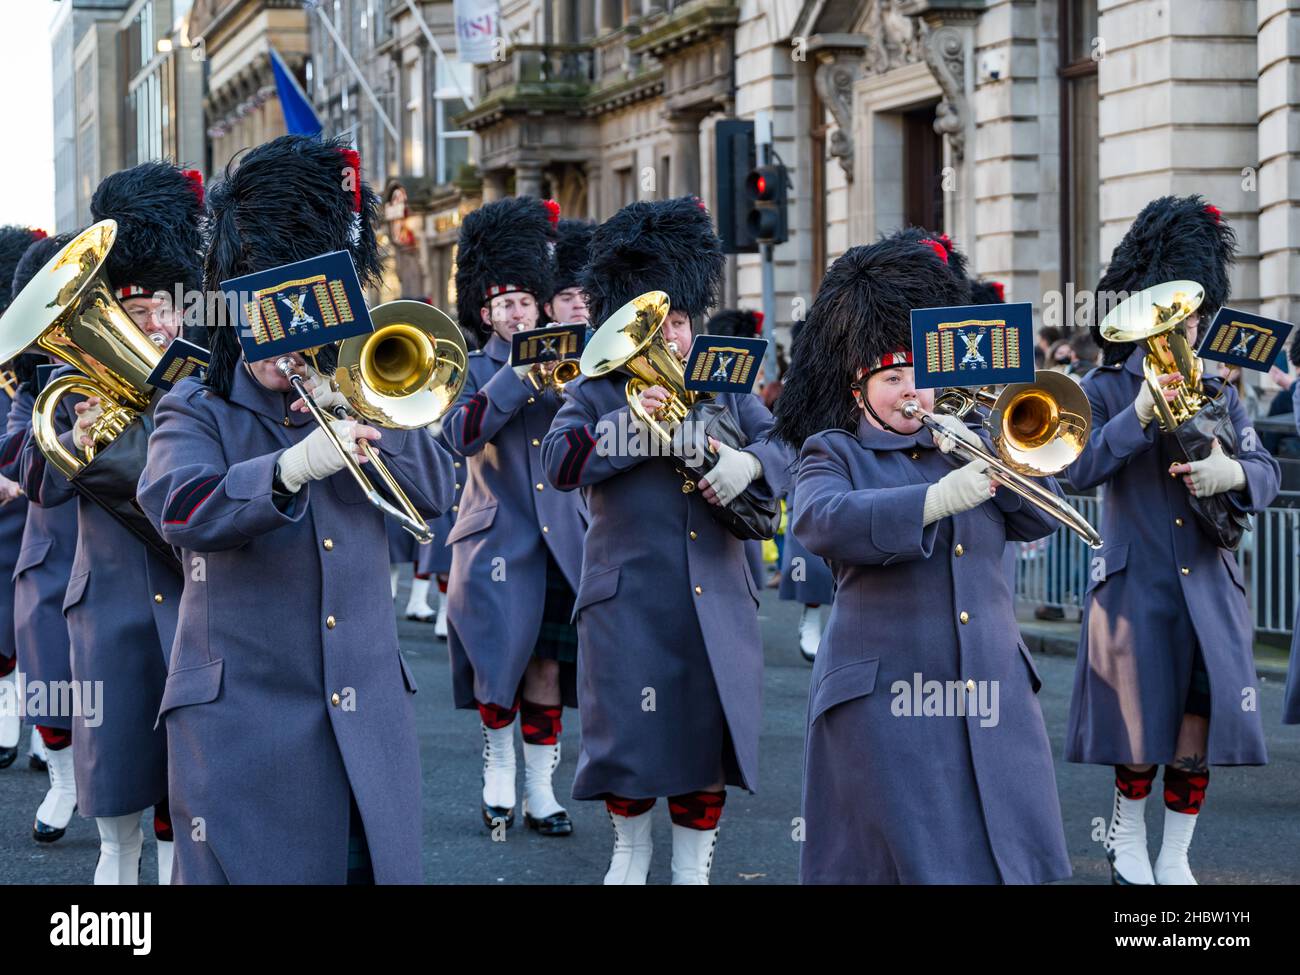 Gruppo militare di reggimento scozzese che suona strumenti in ottone alla sfilata del festival Diwali, George Street, Edimburgo, Scozia, Regno Unito Foto Stock